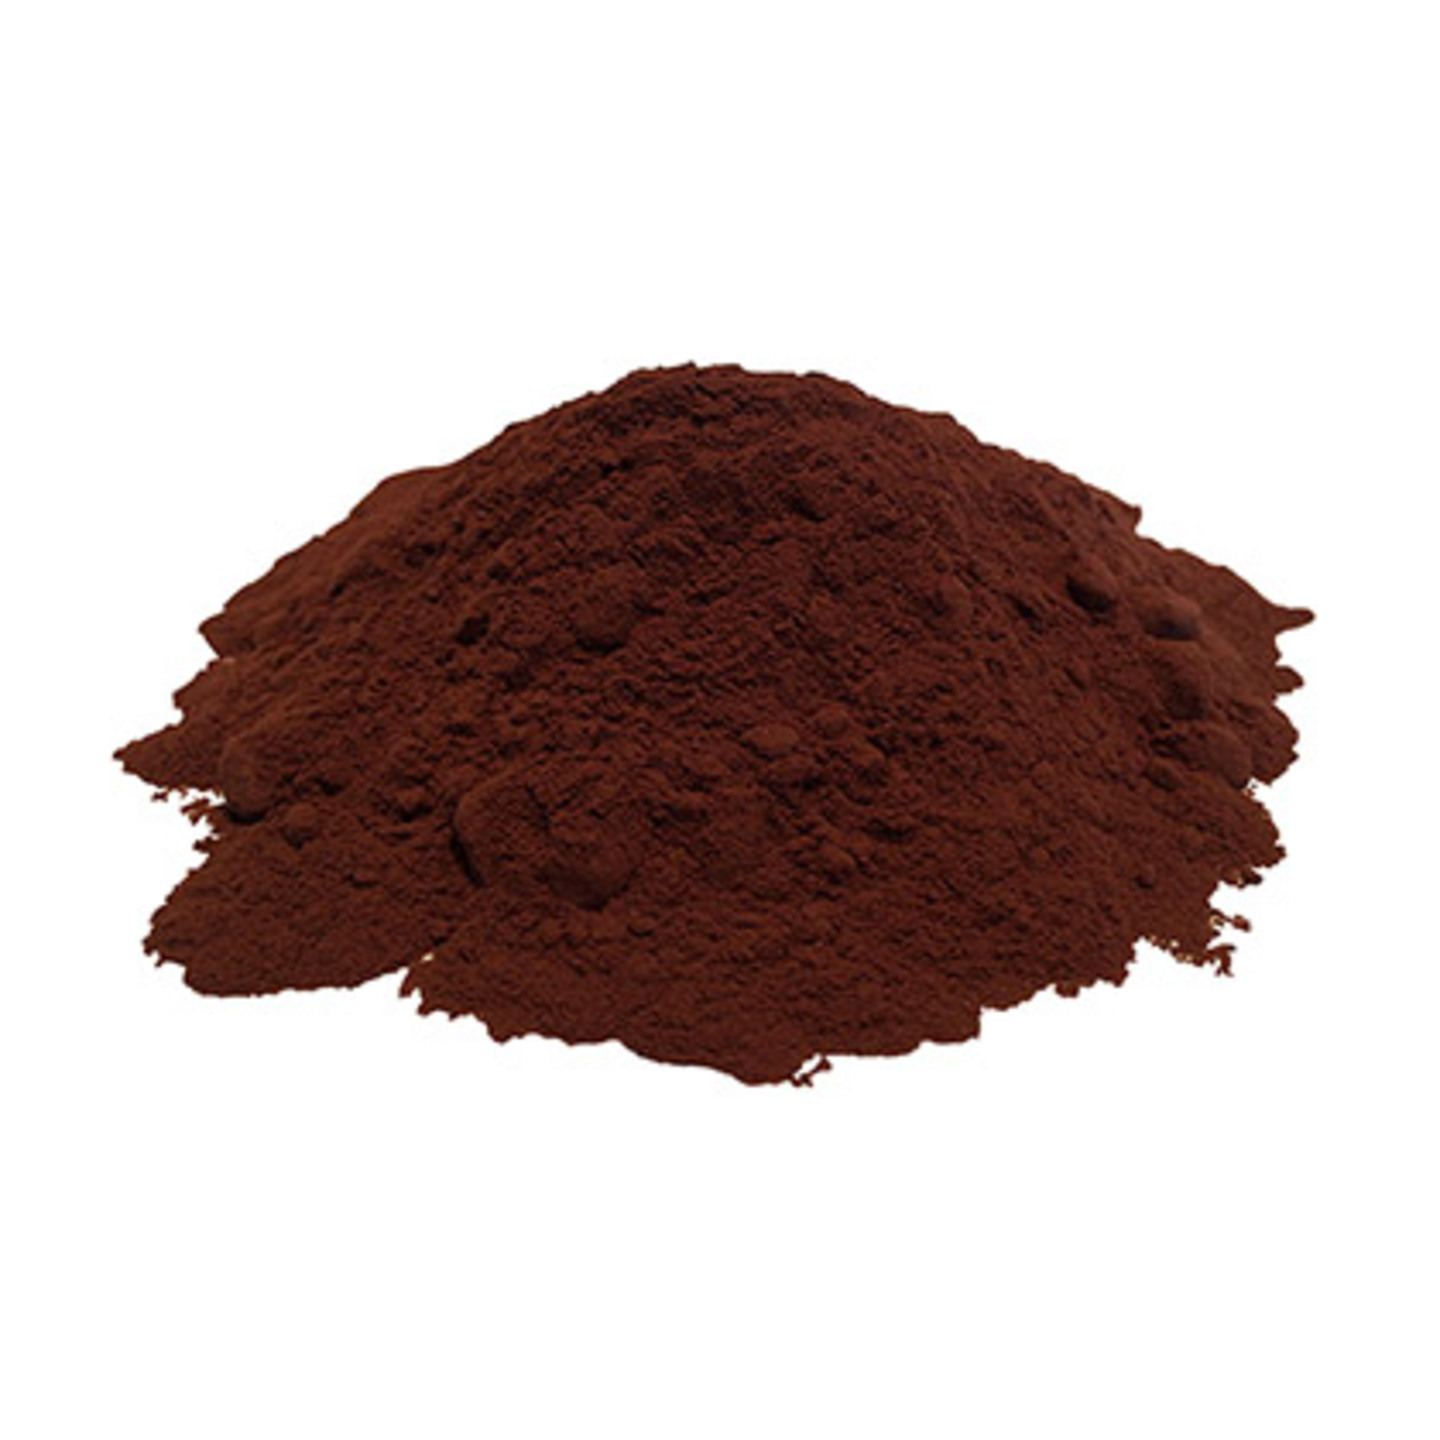 Cocoa  Powder